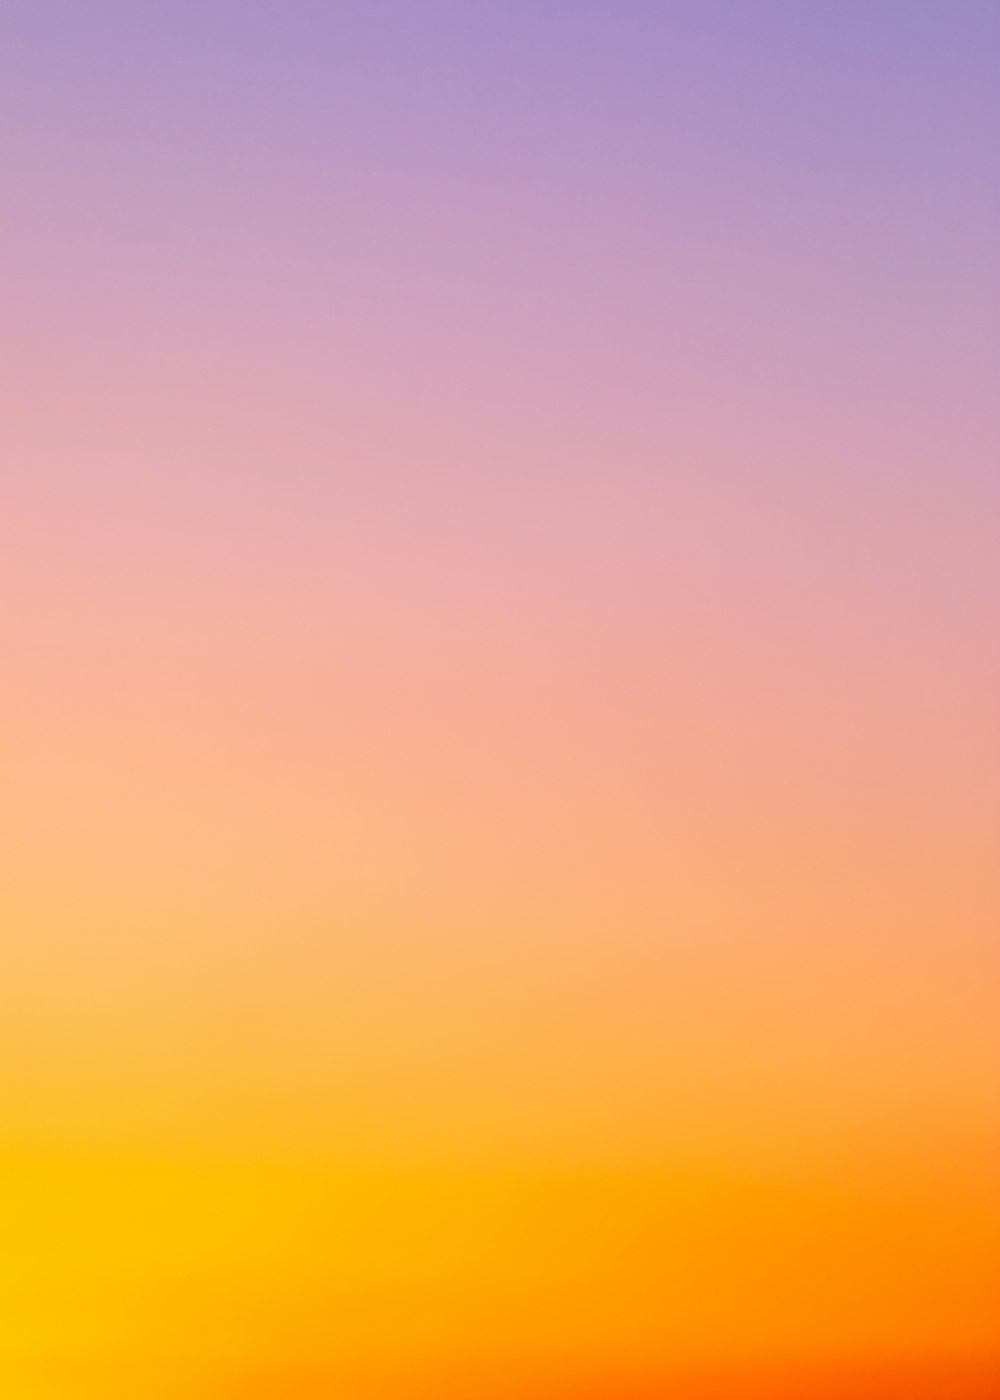 Những hình ảnh nền gradient cam sẽ mang đến cho màn hình của bạn sự tươi sáng và năng động. Gradient cam là sự hòa trộn giữa màu cam đậm và nhạt, tạo ra sự độc đáo và khác lạ. Hãy thưởng thức ảnh liên quan để có những trải nghiệm thú vị.